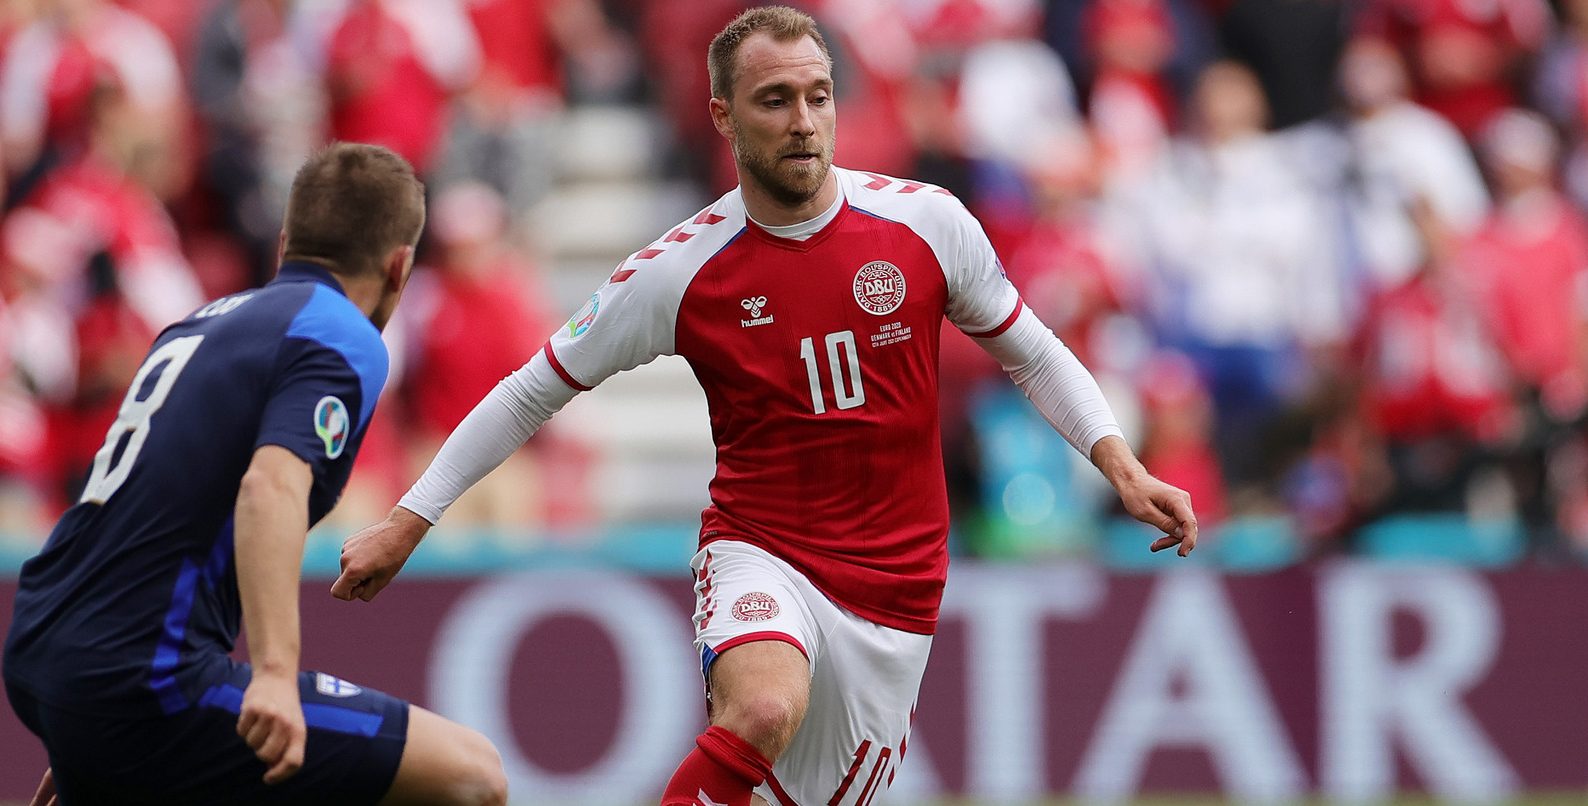 تداولت العديد من صفحات ومواقع التواصل الاجتماعي الأحد الماضي 13 يونيو/ حزيران الحالي صورة للاعب الدنماركي (كريستان إيركسن)، وادعت أنها الظهور الأول له بعد وقوعه في مباراة الدنمارك وفنلندا في بطولة(يورو2020)